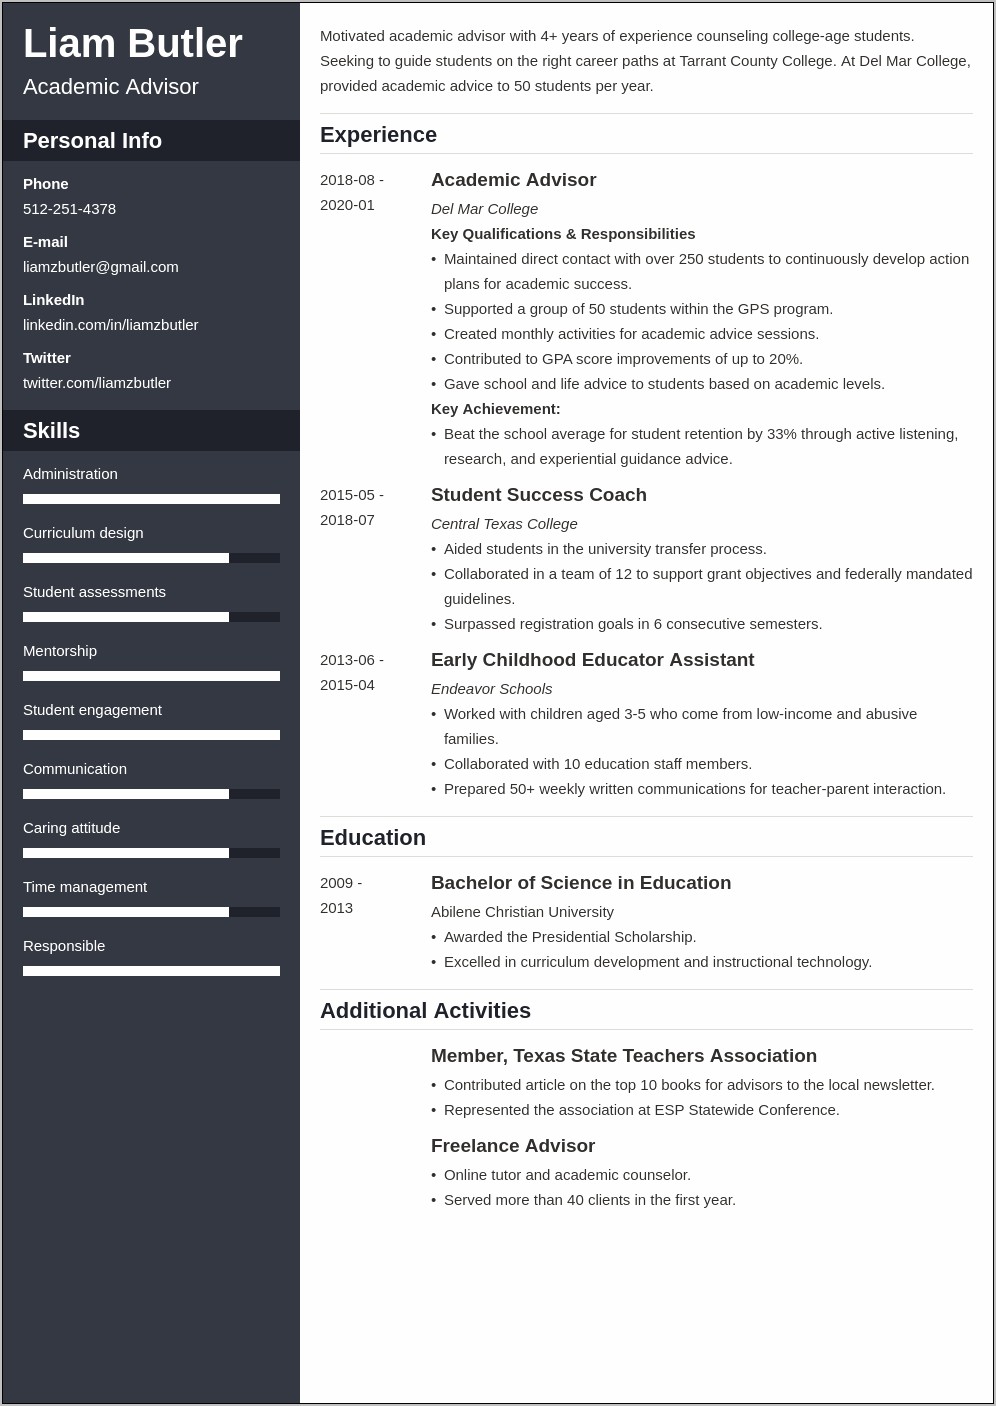 Sample Resume For Academic Advisor Position